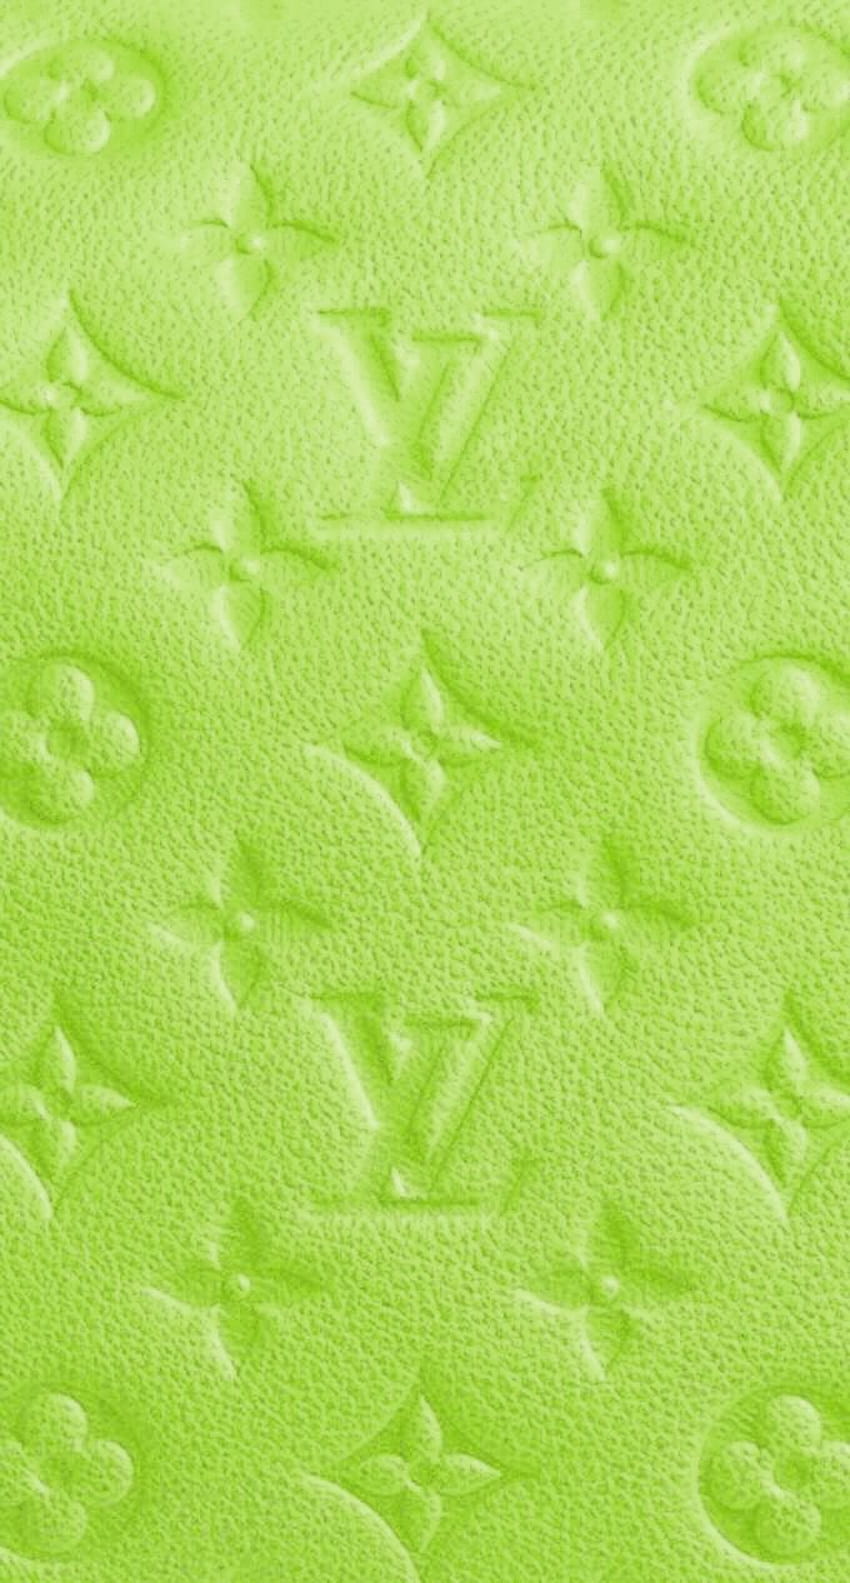 Louis Vuitton green logo, , green neon lights, creative, green abstract  background, HD wallpaper